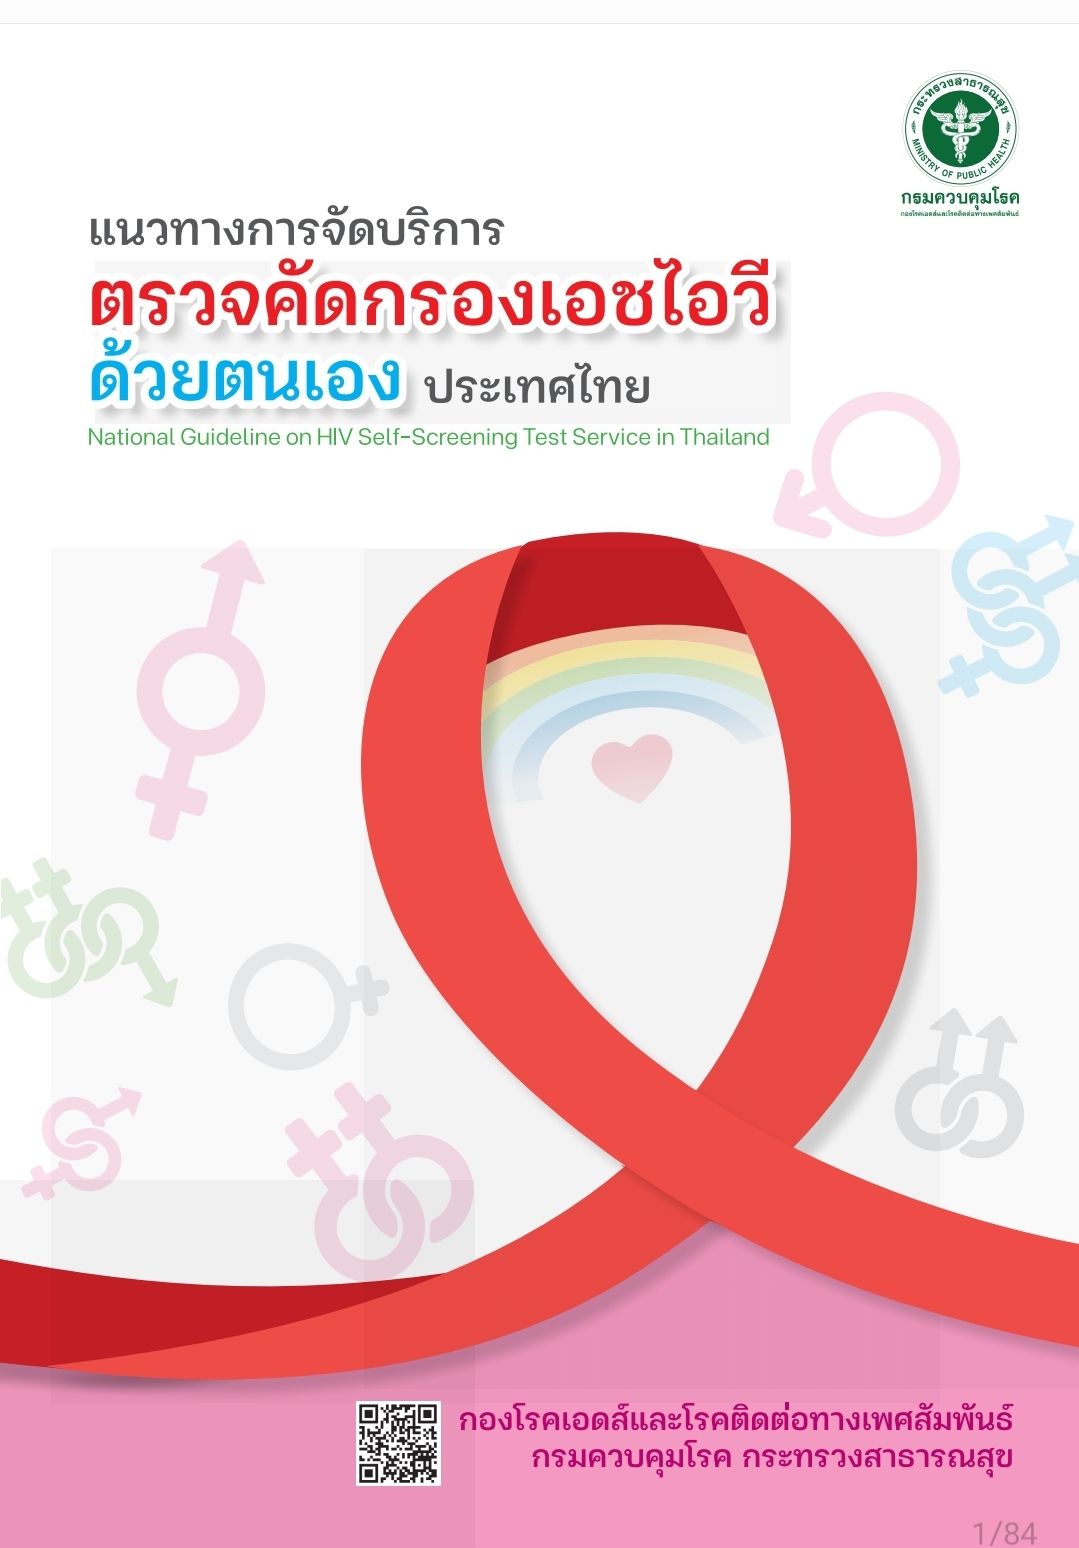 แนวทางการจัดบริการตรวจคัดกรอง HIV ด้วยตนเอง ประเทศไทย 